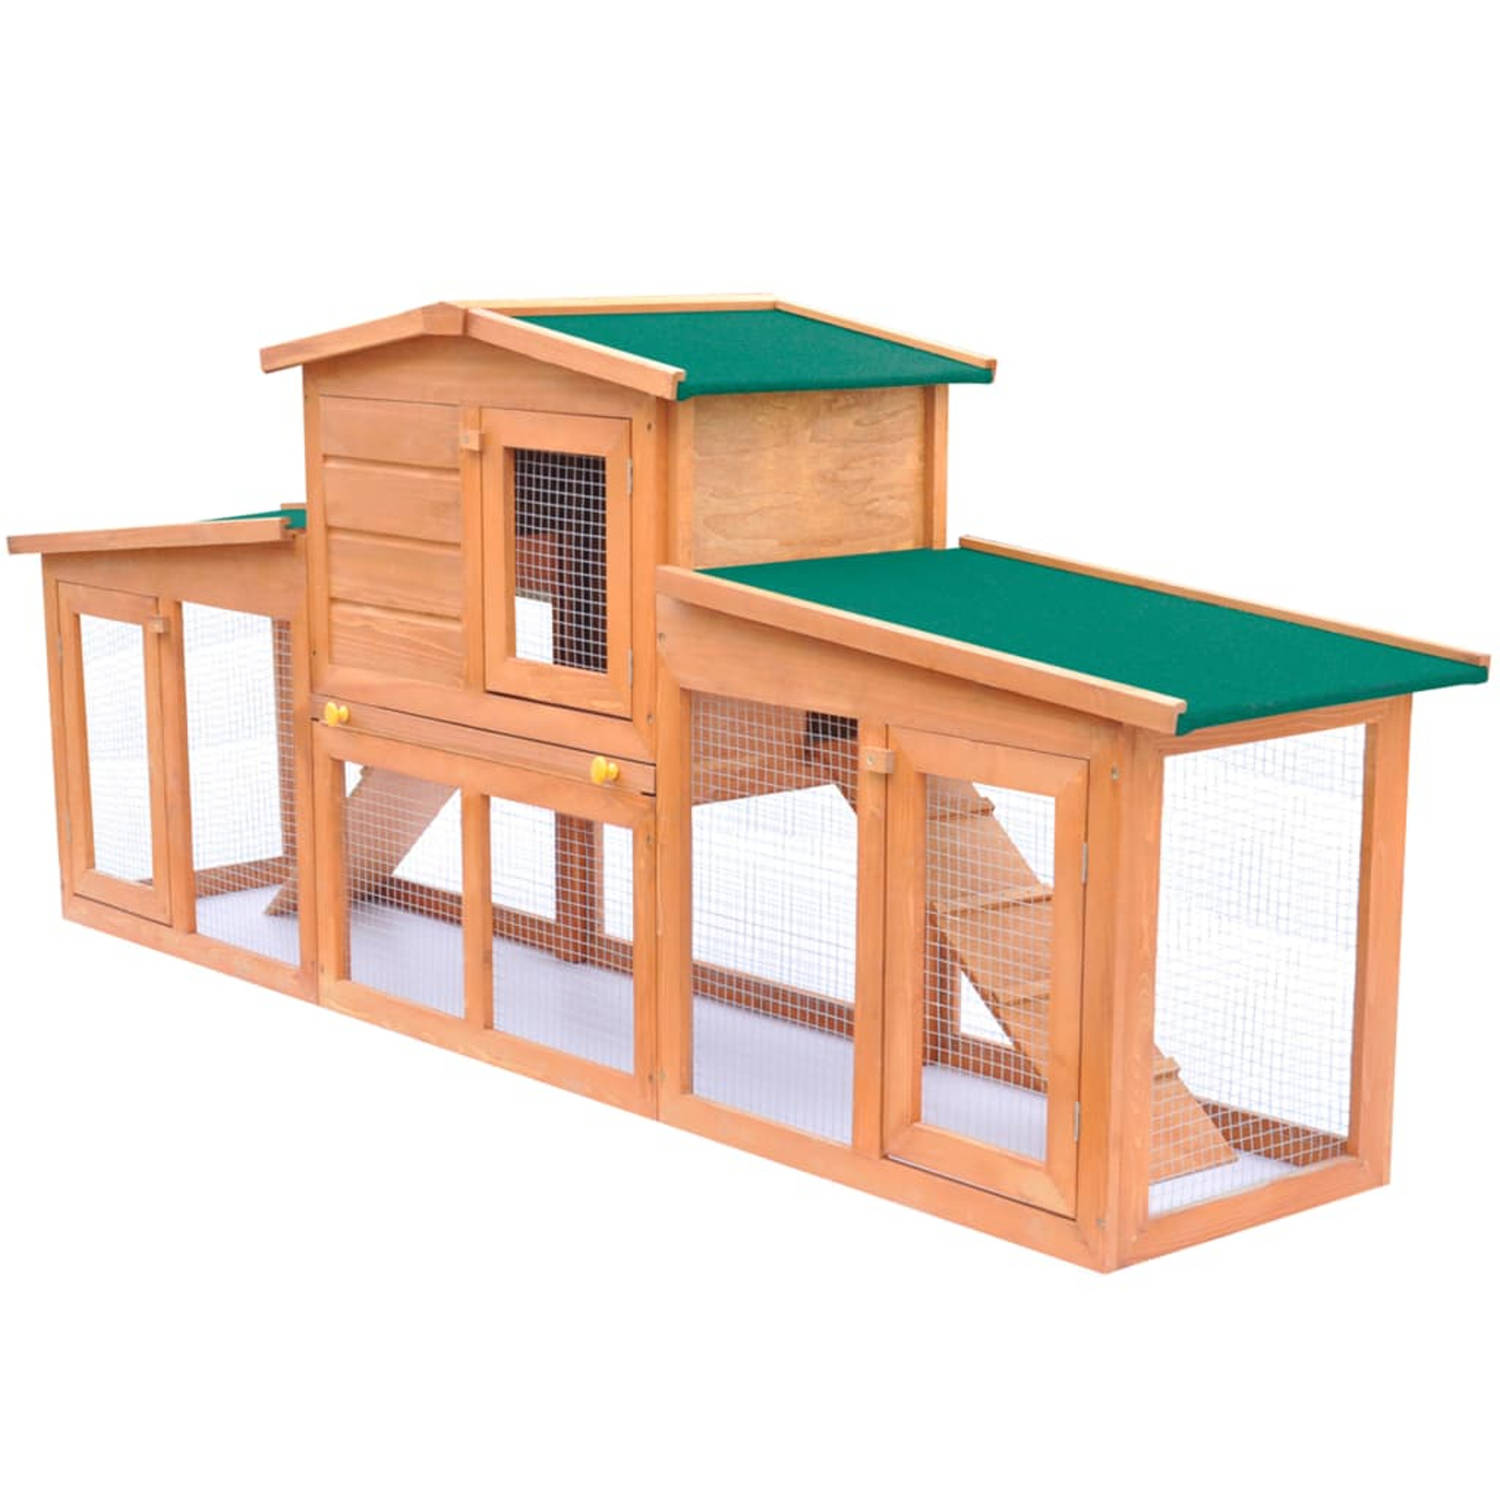 Groot konijnenhok met houten dak voor kleine dieren